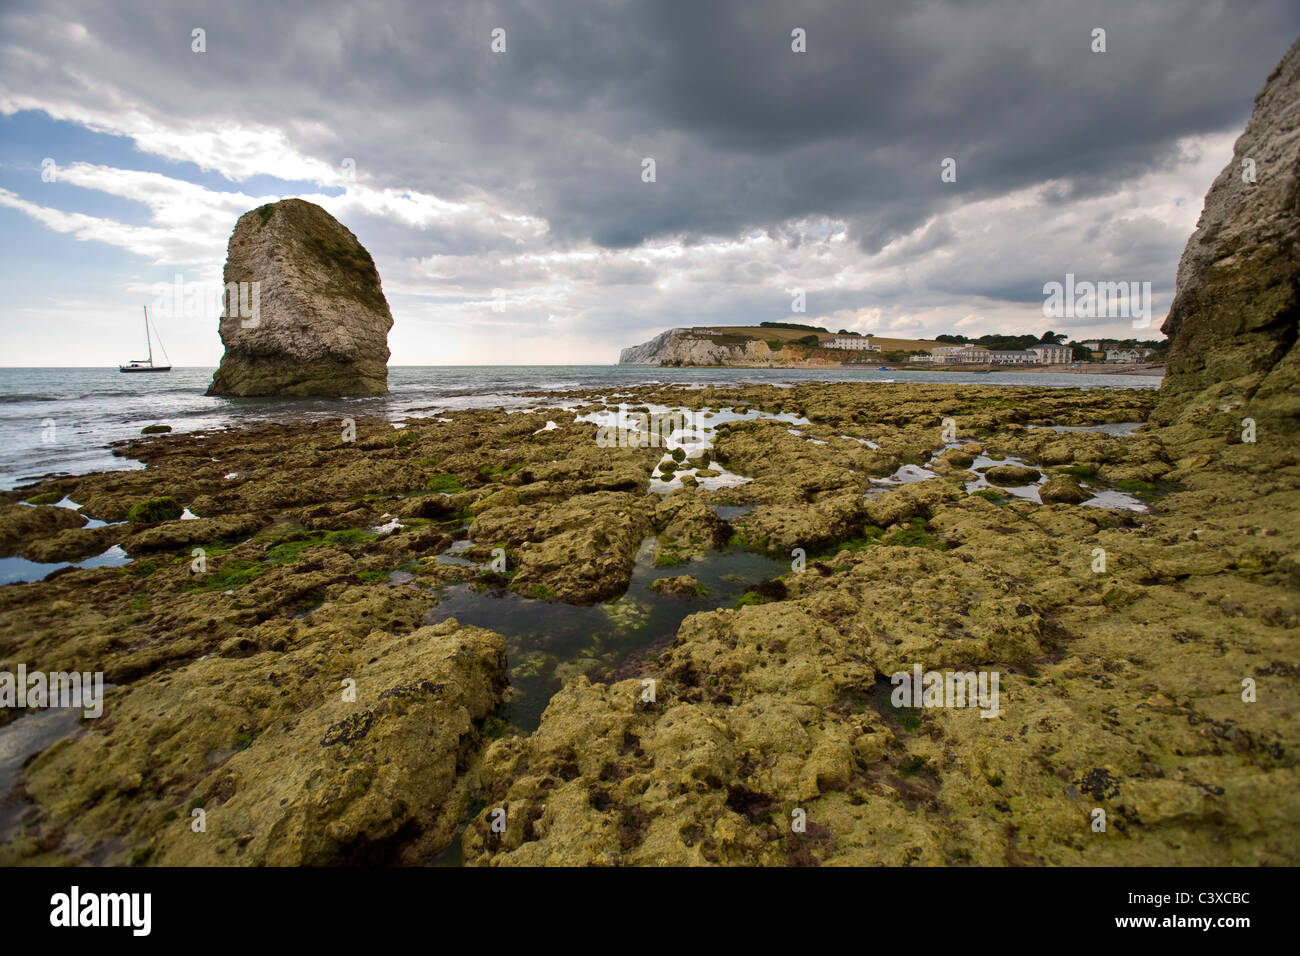 Plate-forme Wave Cut, Fossil, Paléontologie, Freshwater Bay, Ile de Wight, Angleterre, Royaume-Uni, plage. Géologie, Banque D'Images